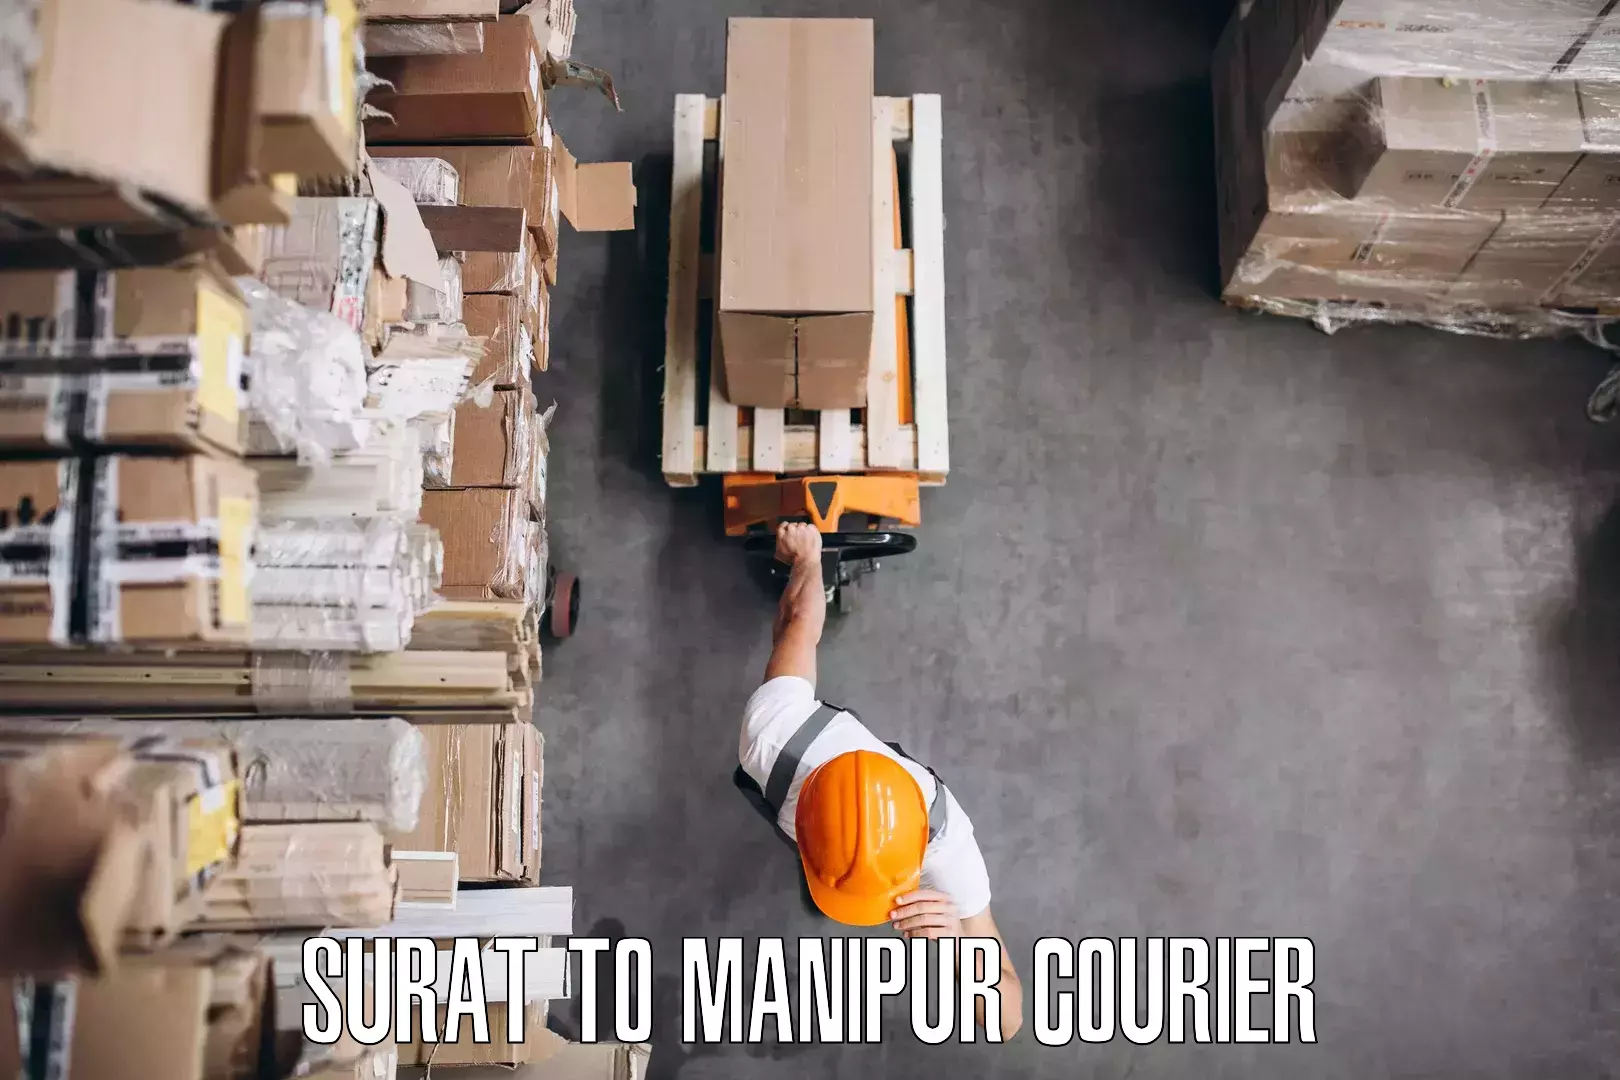 Furniture delivery service Surat to Churachandpur